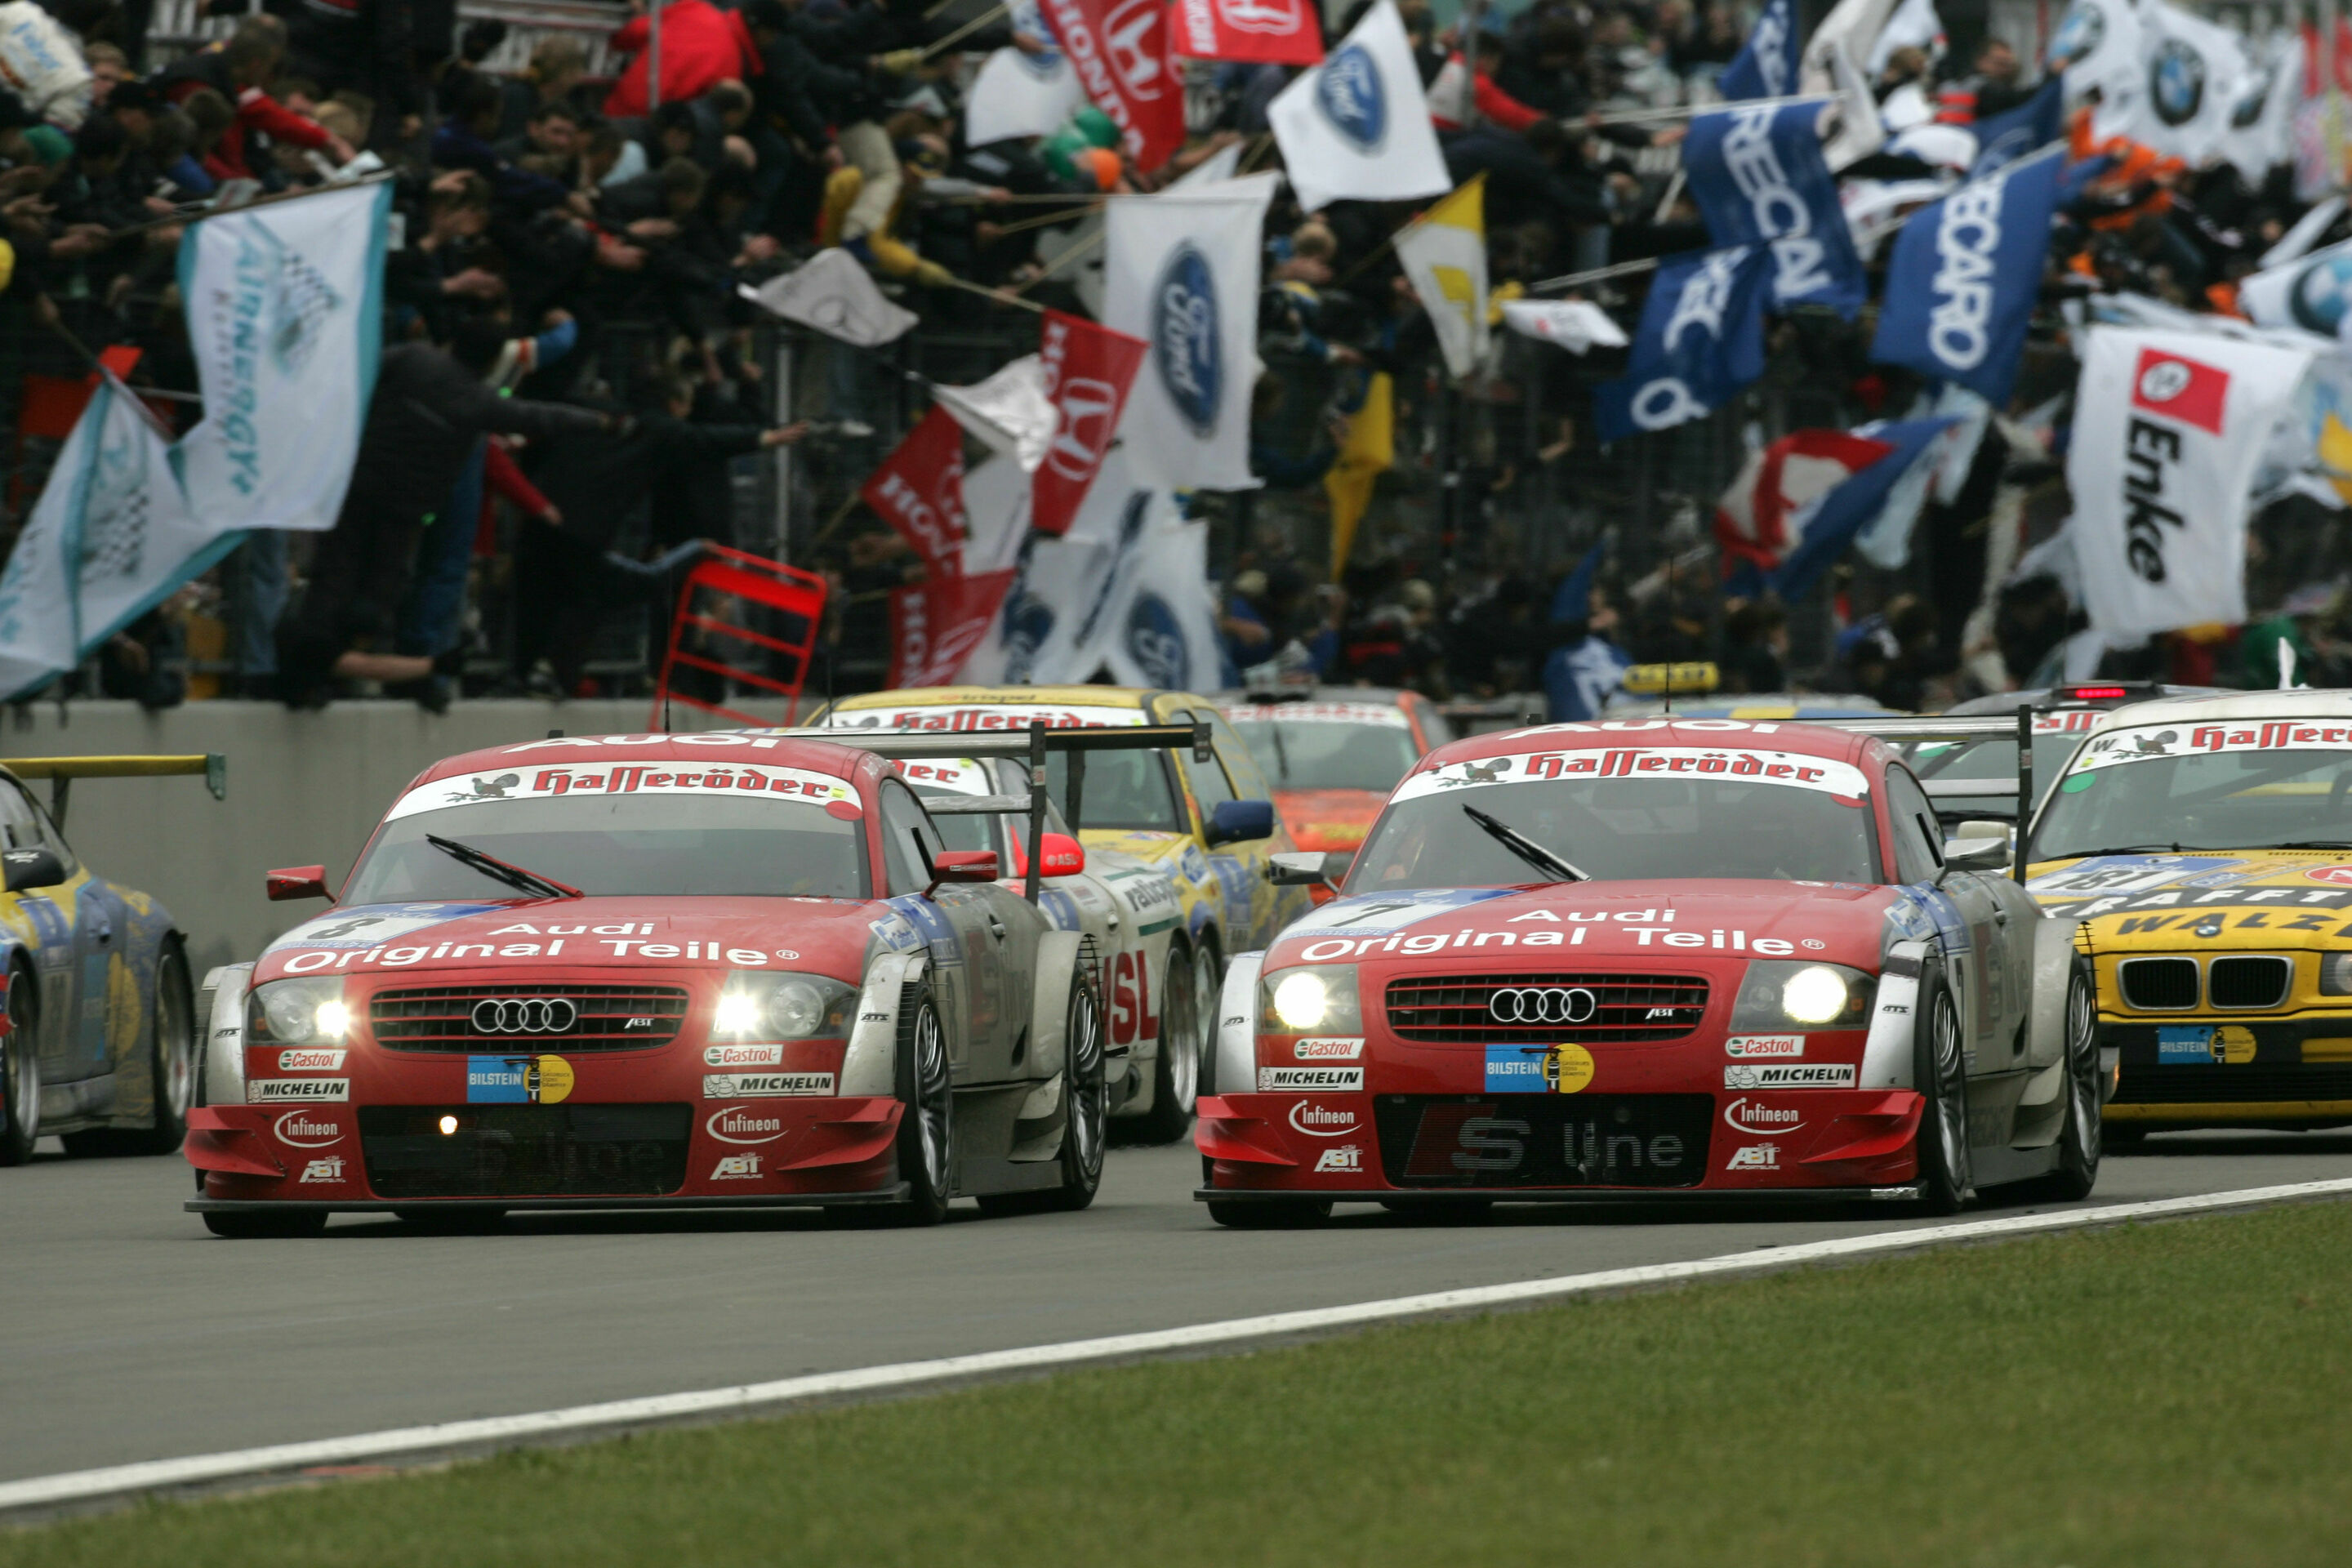 24h Nürburgring 2004